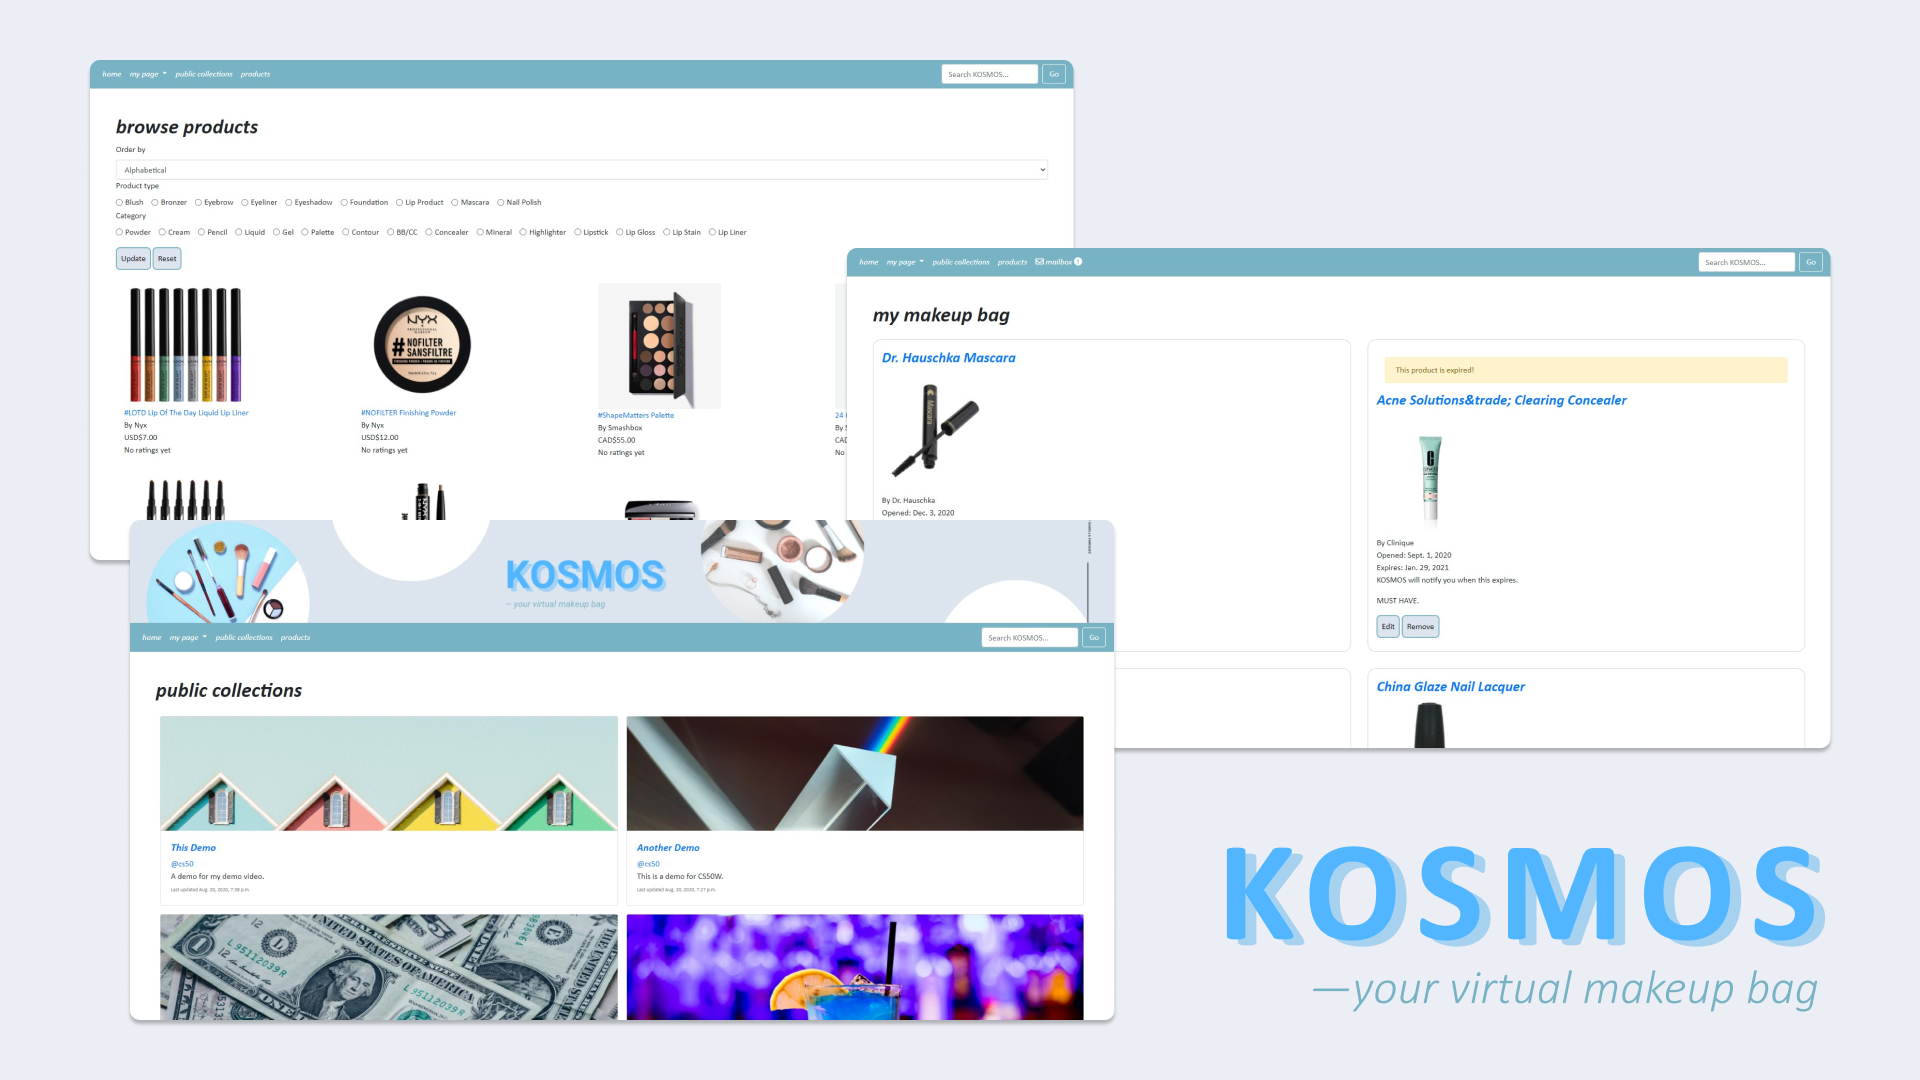 KOSMOS — your virtual makeup bag